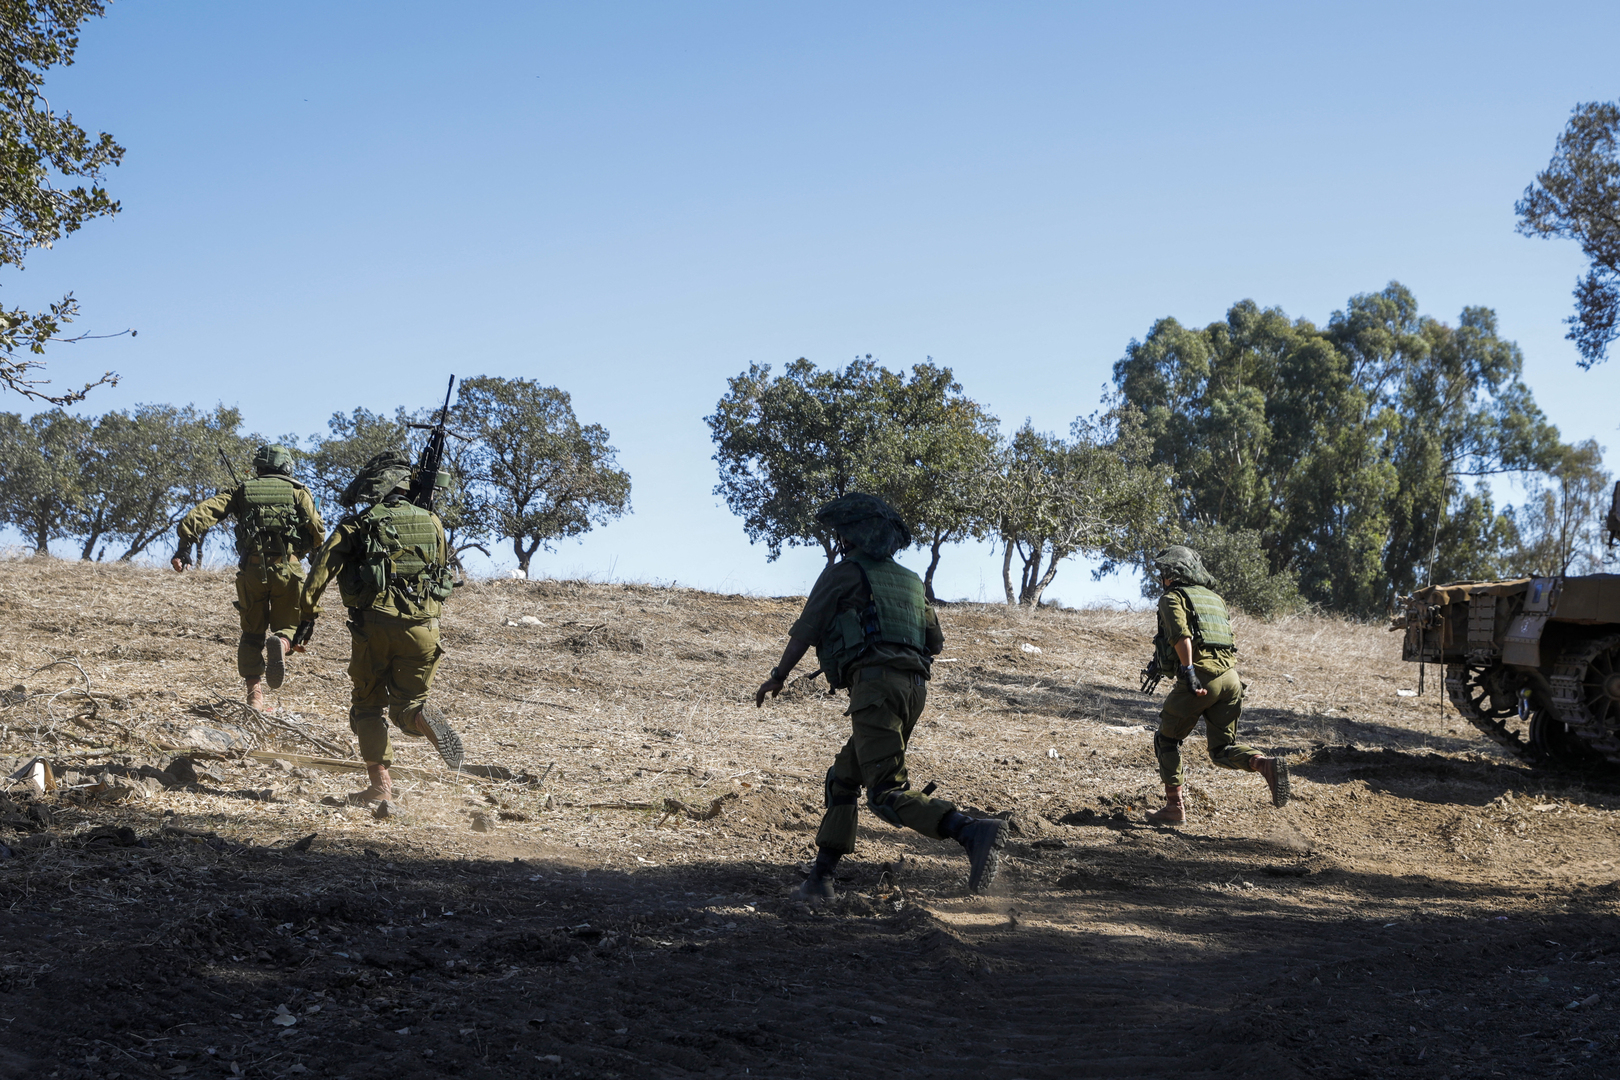 تقديرات الجيش الإسرائيلي بشأن حرب في الشمال مع لبنان تتزايد